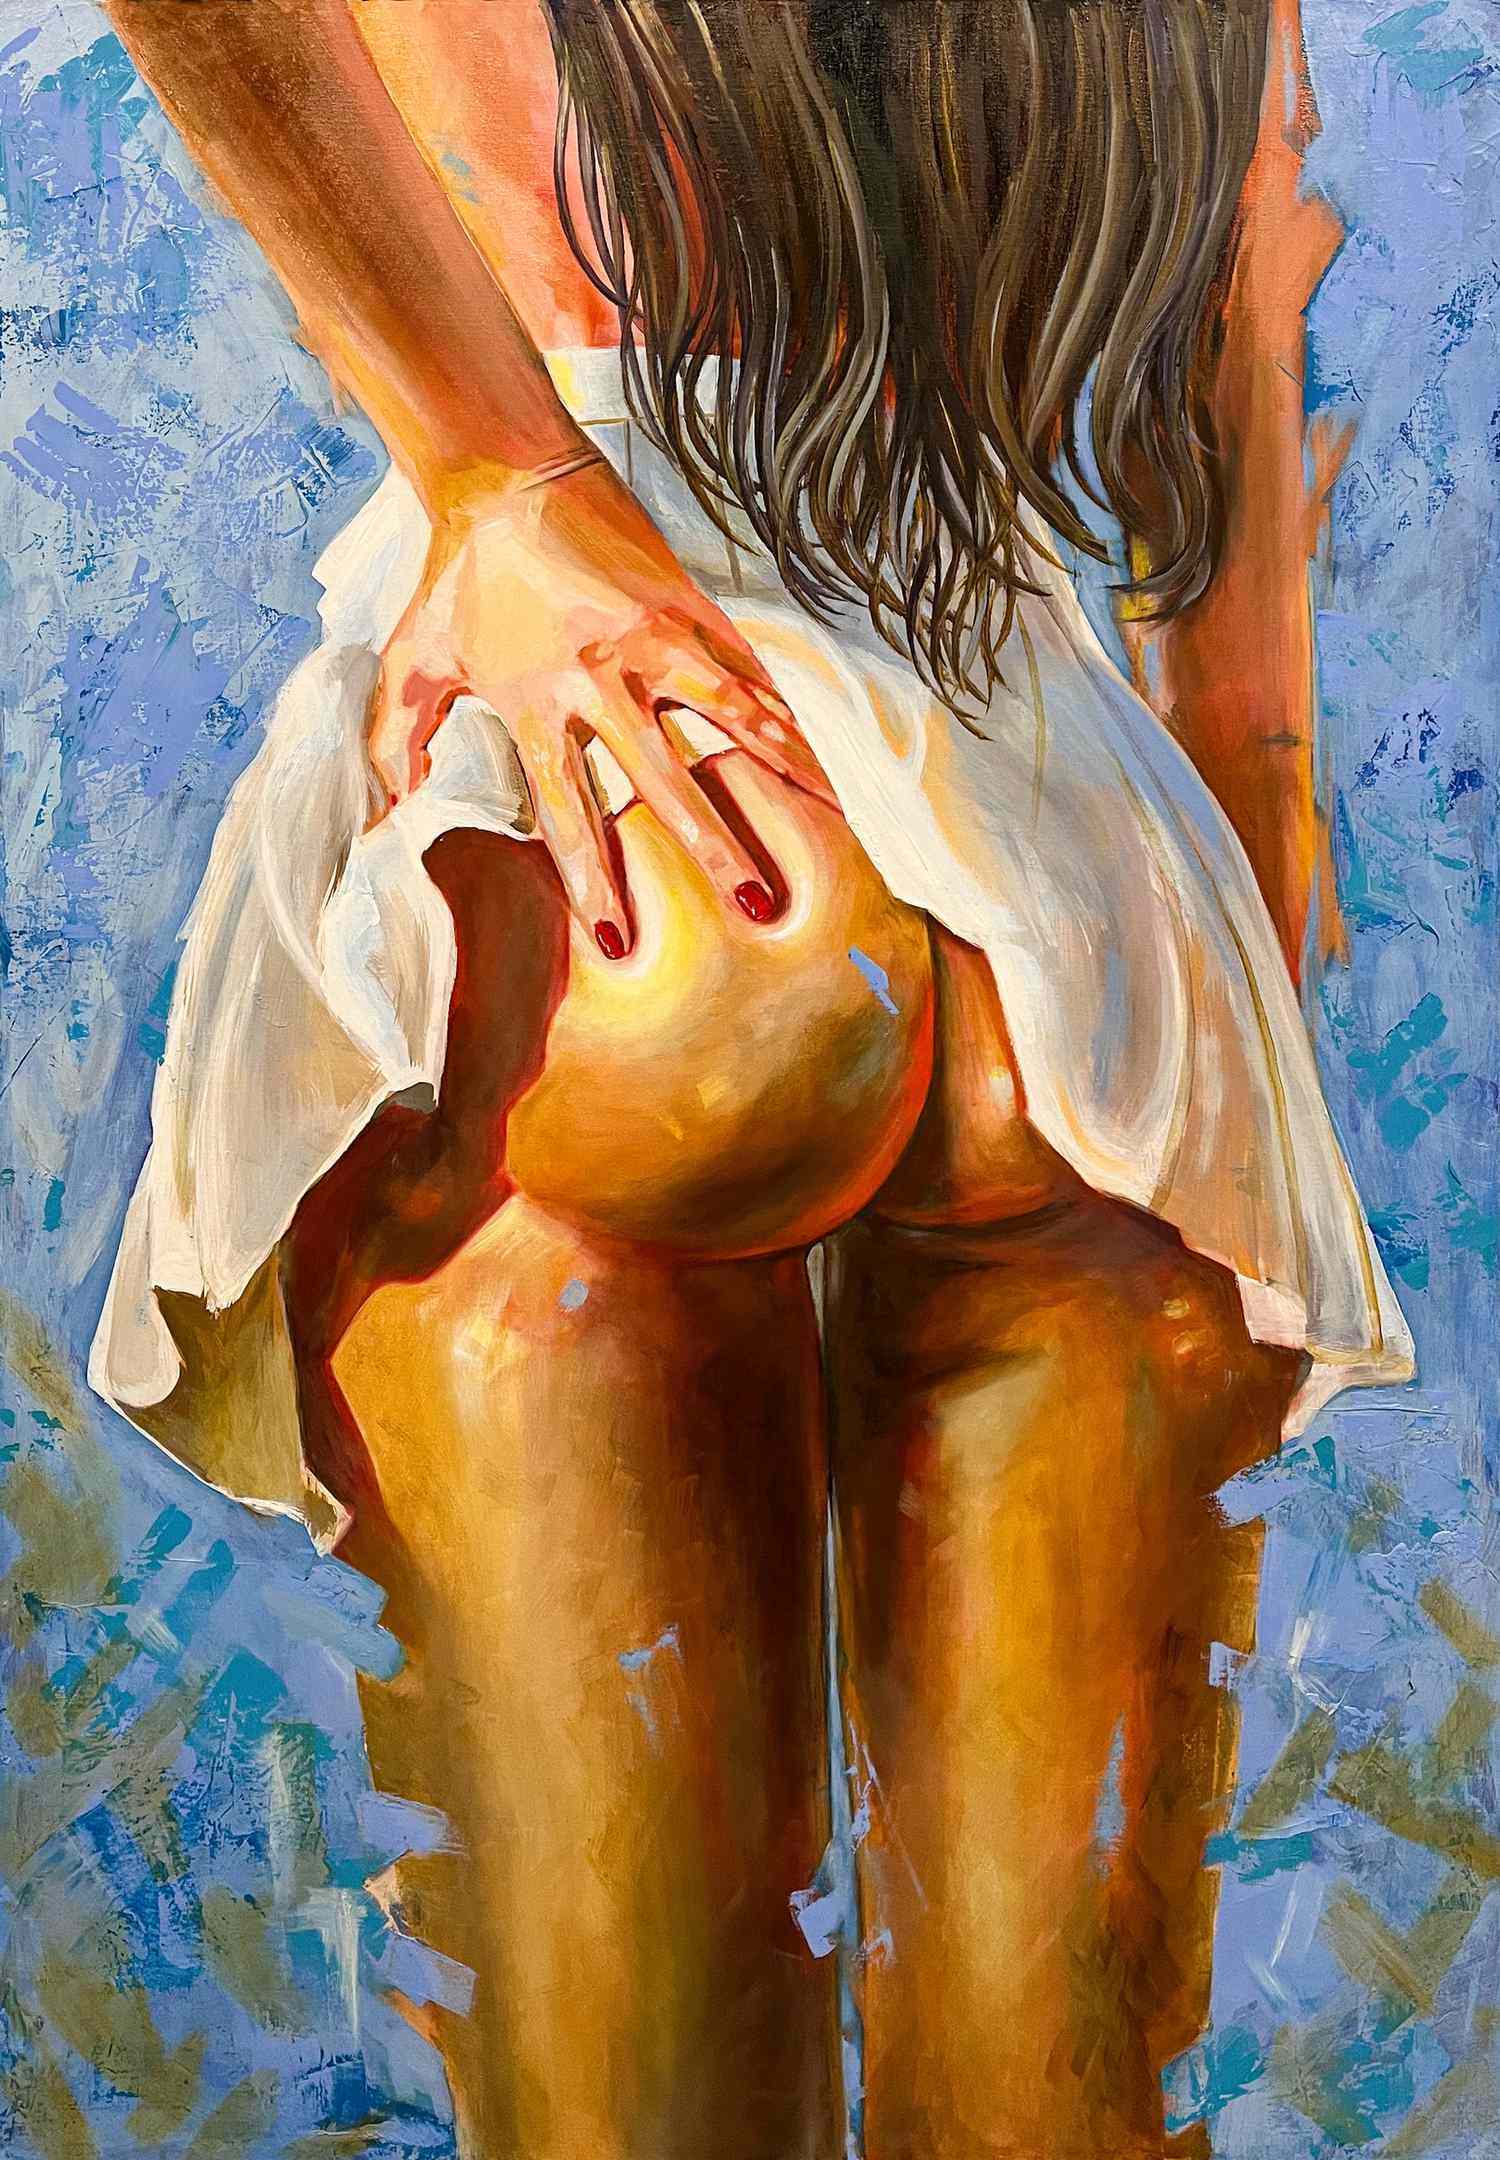 Неизвестный художник. Россия. Портрет девушки в белой юбке. Вид сзади. 2010-е годы.